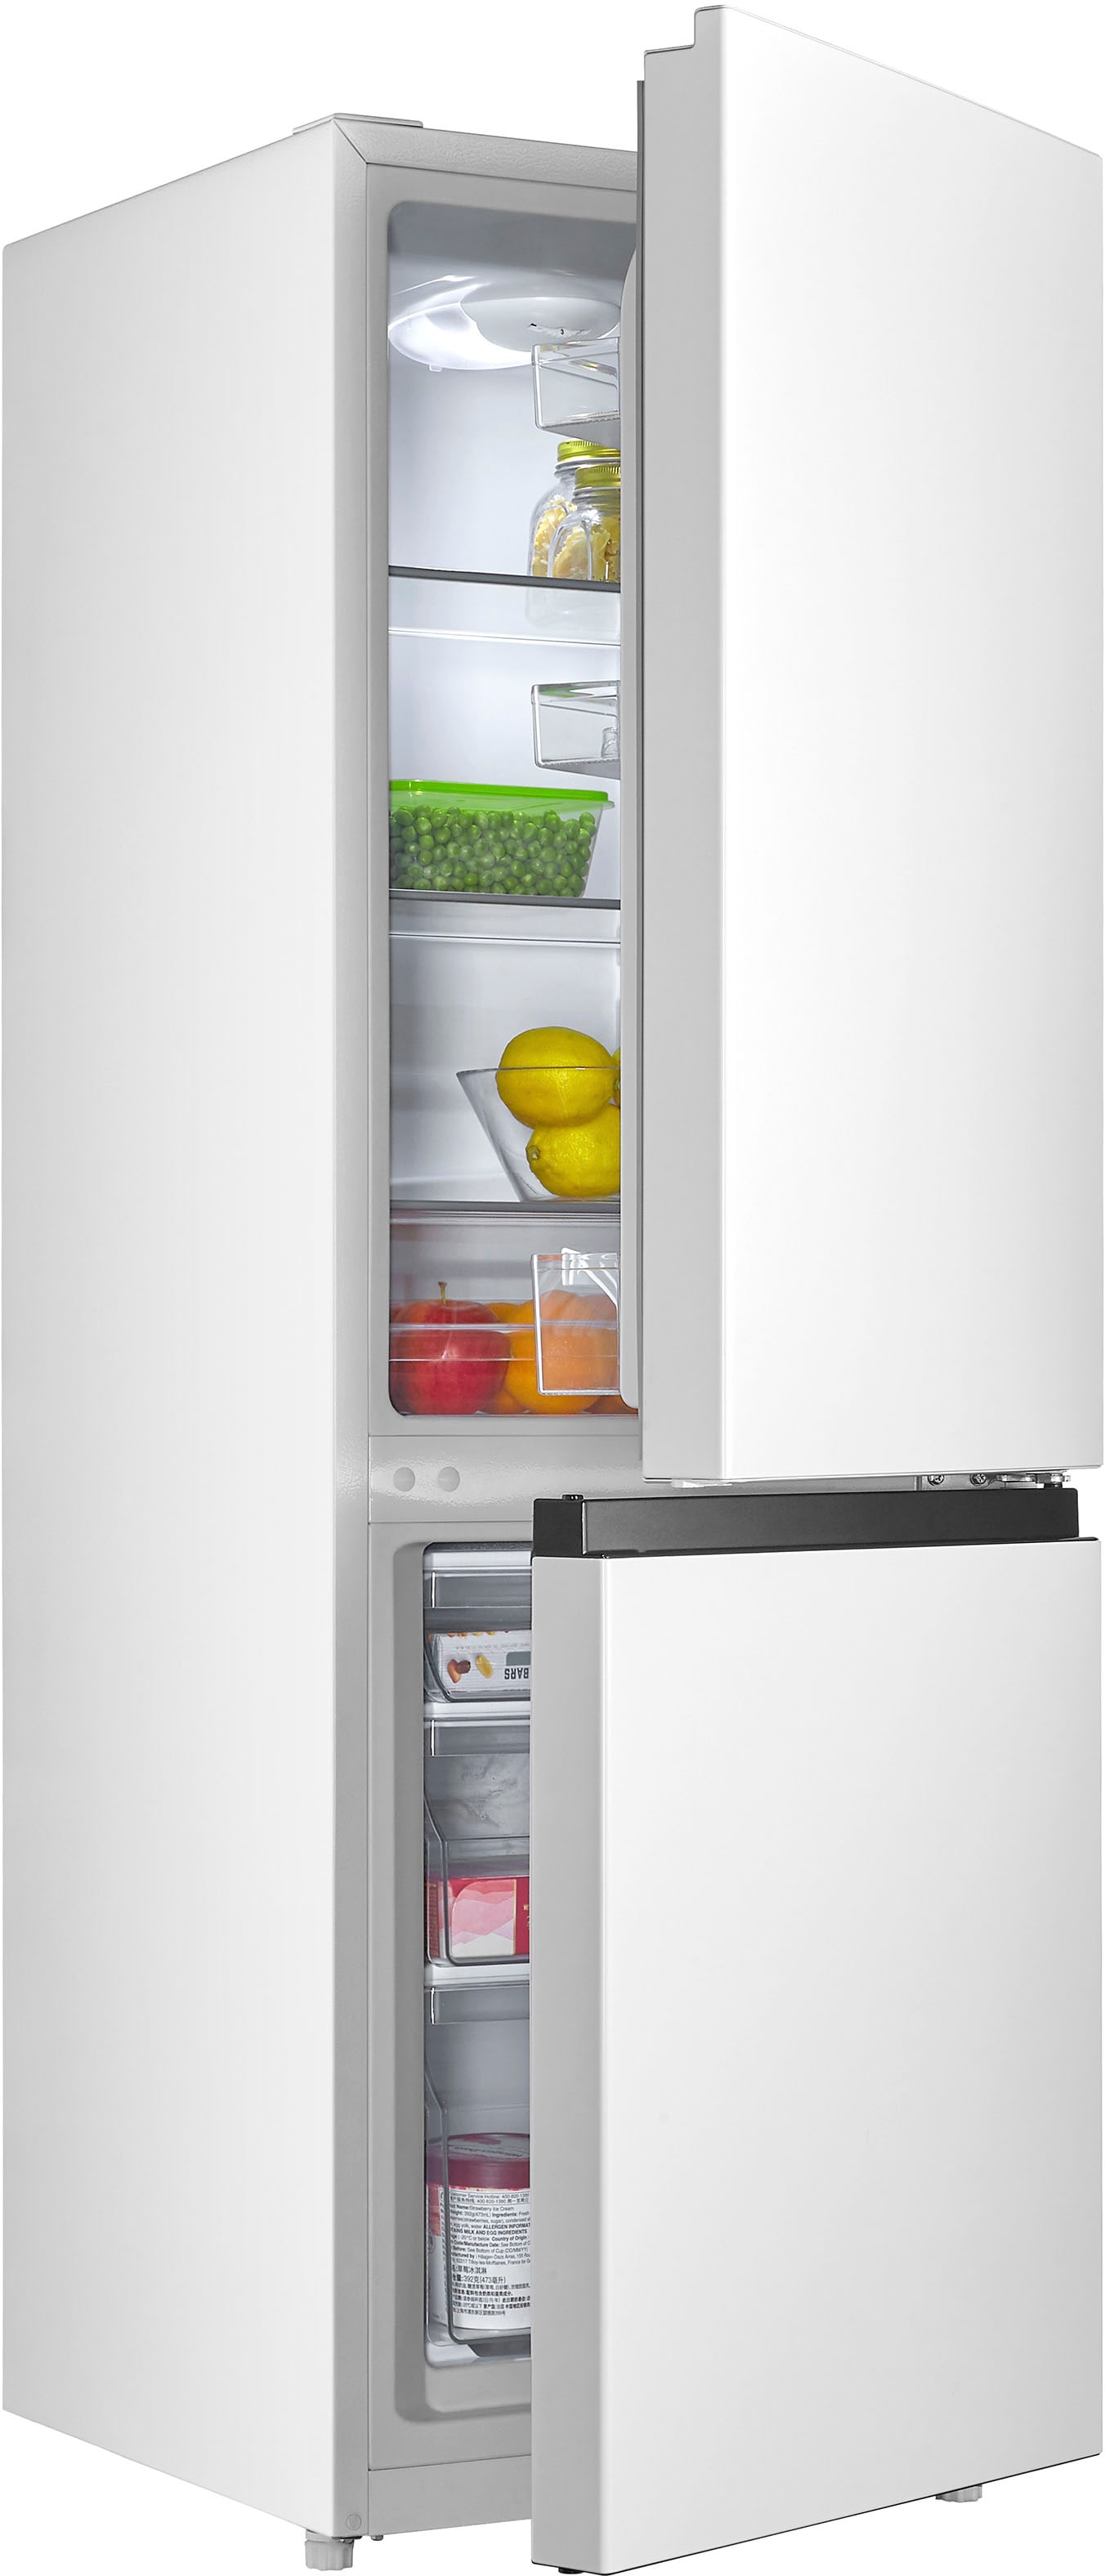 Kühlschränke bequem bei Hanseatic OTTO